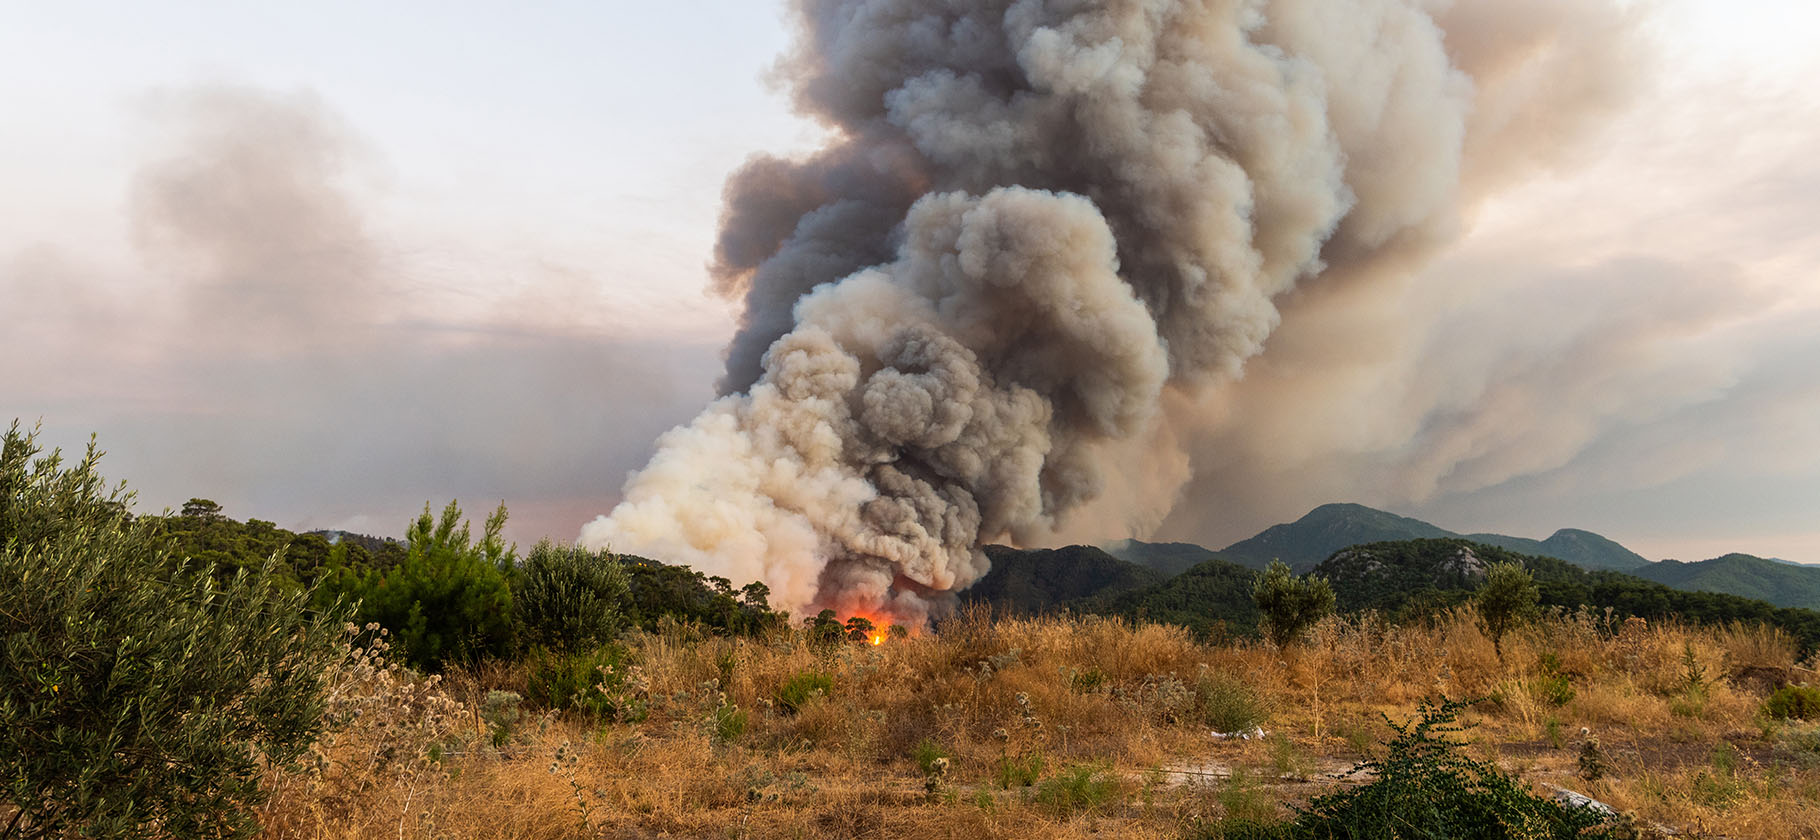 Турция охвачена лесными пожарами. Что нужно знать туристам